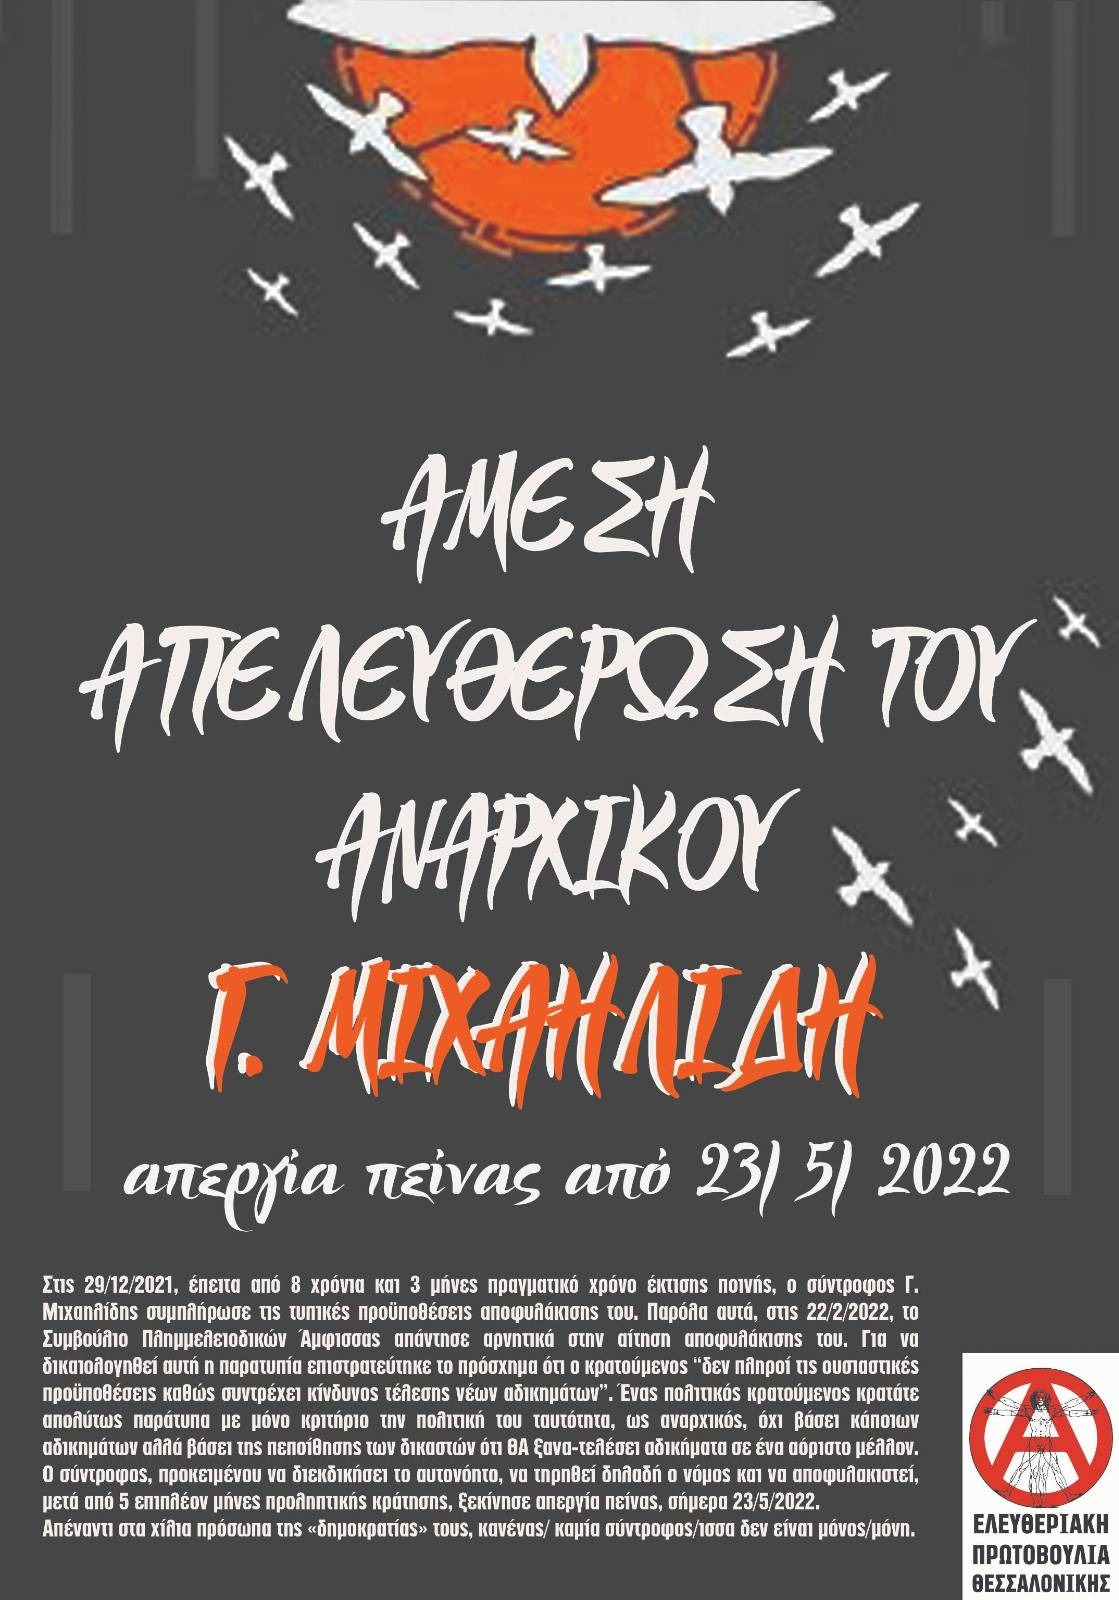 Άμεση απελευθέρωση του αναρχικού Γ. Μιχαηλίδη | Ελευθεριακή Πρωτοβουλία Θεσσαλονίκης